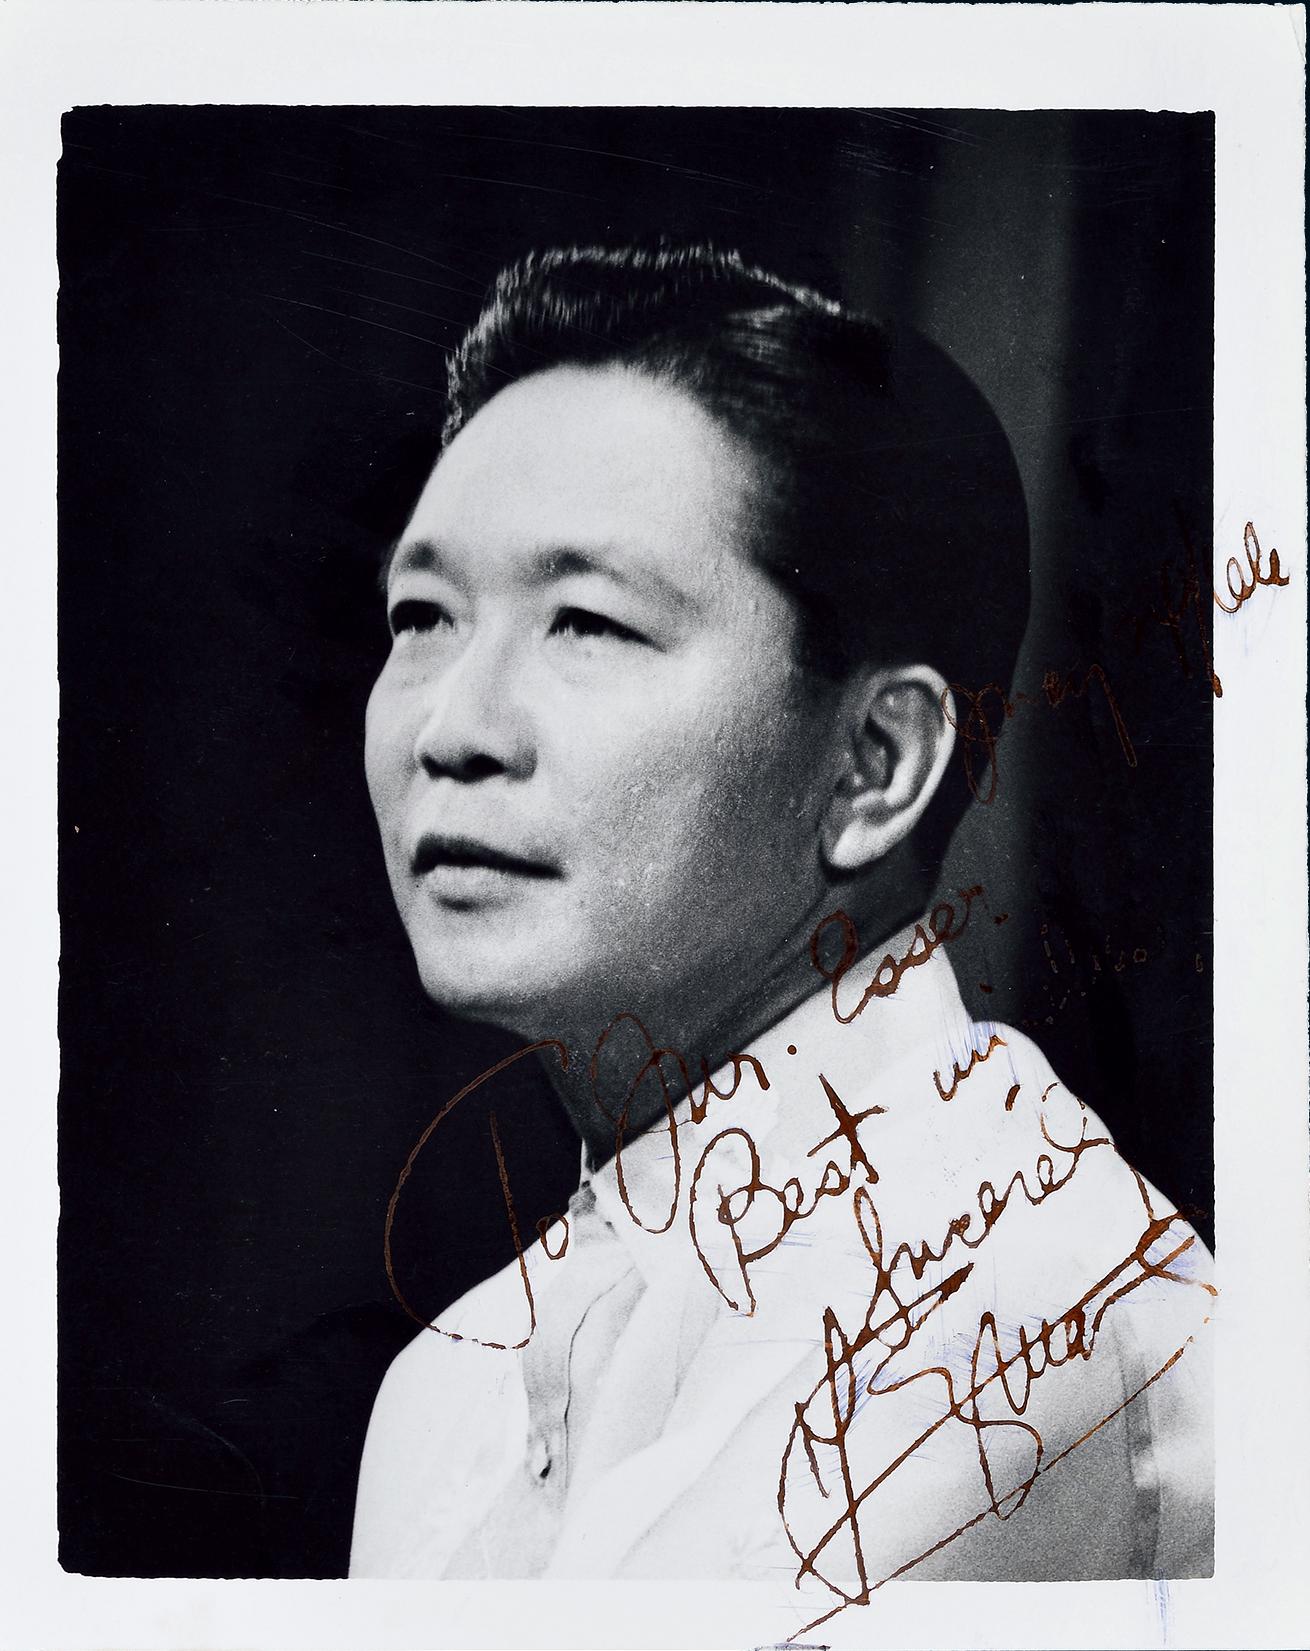 12016菲律宾总统费迪南德马科斯ferdinandmarcos亲笔赠言签名照